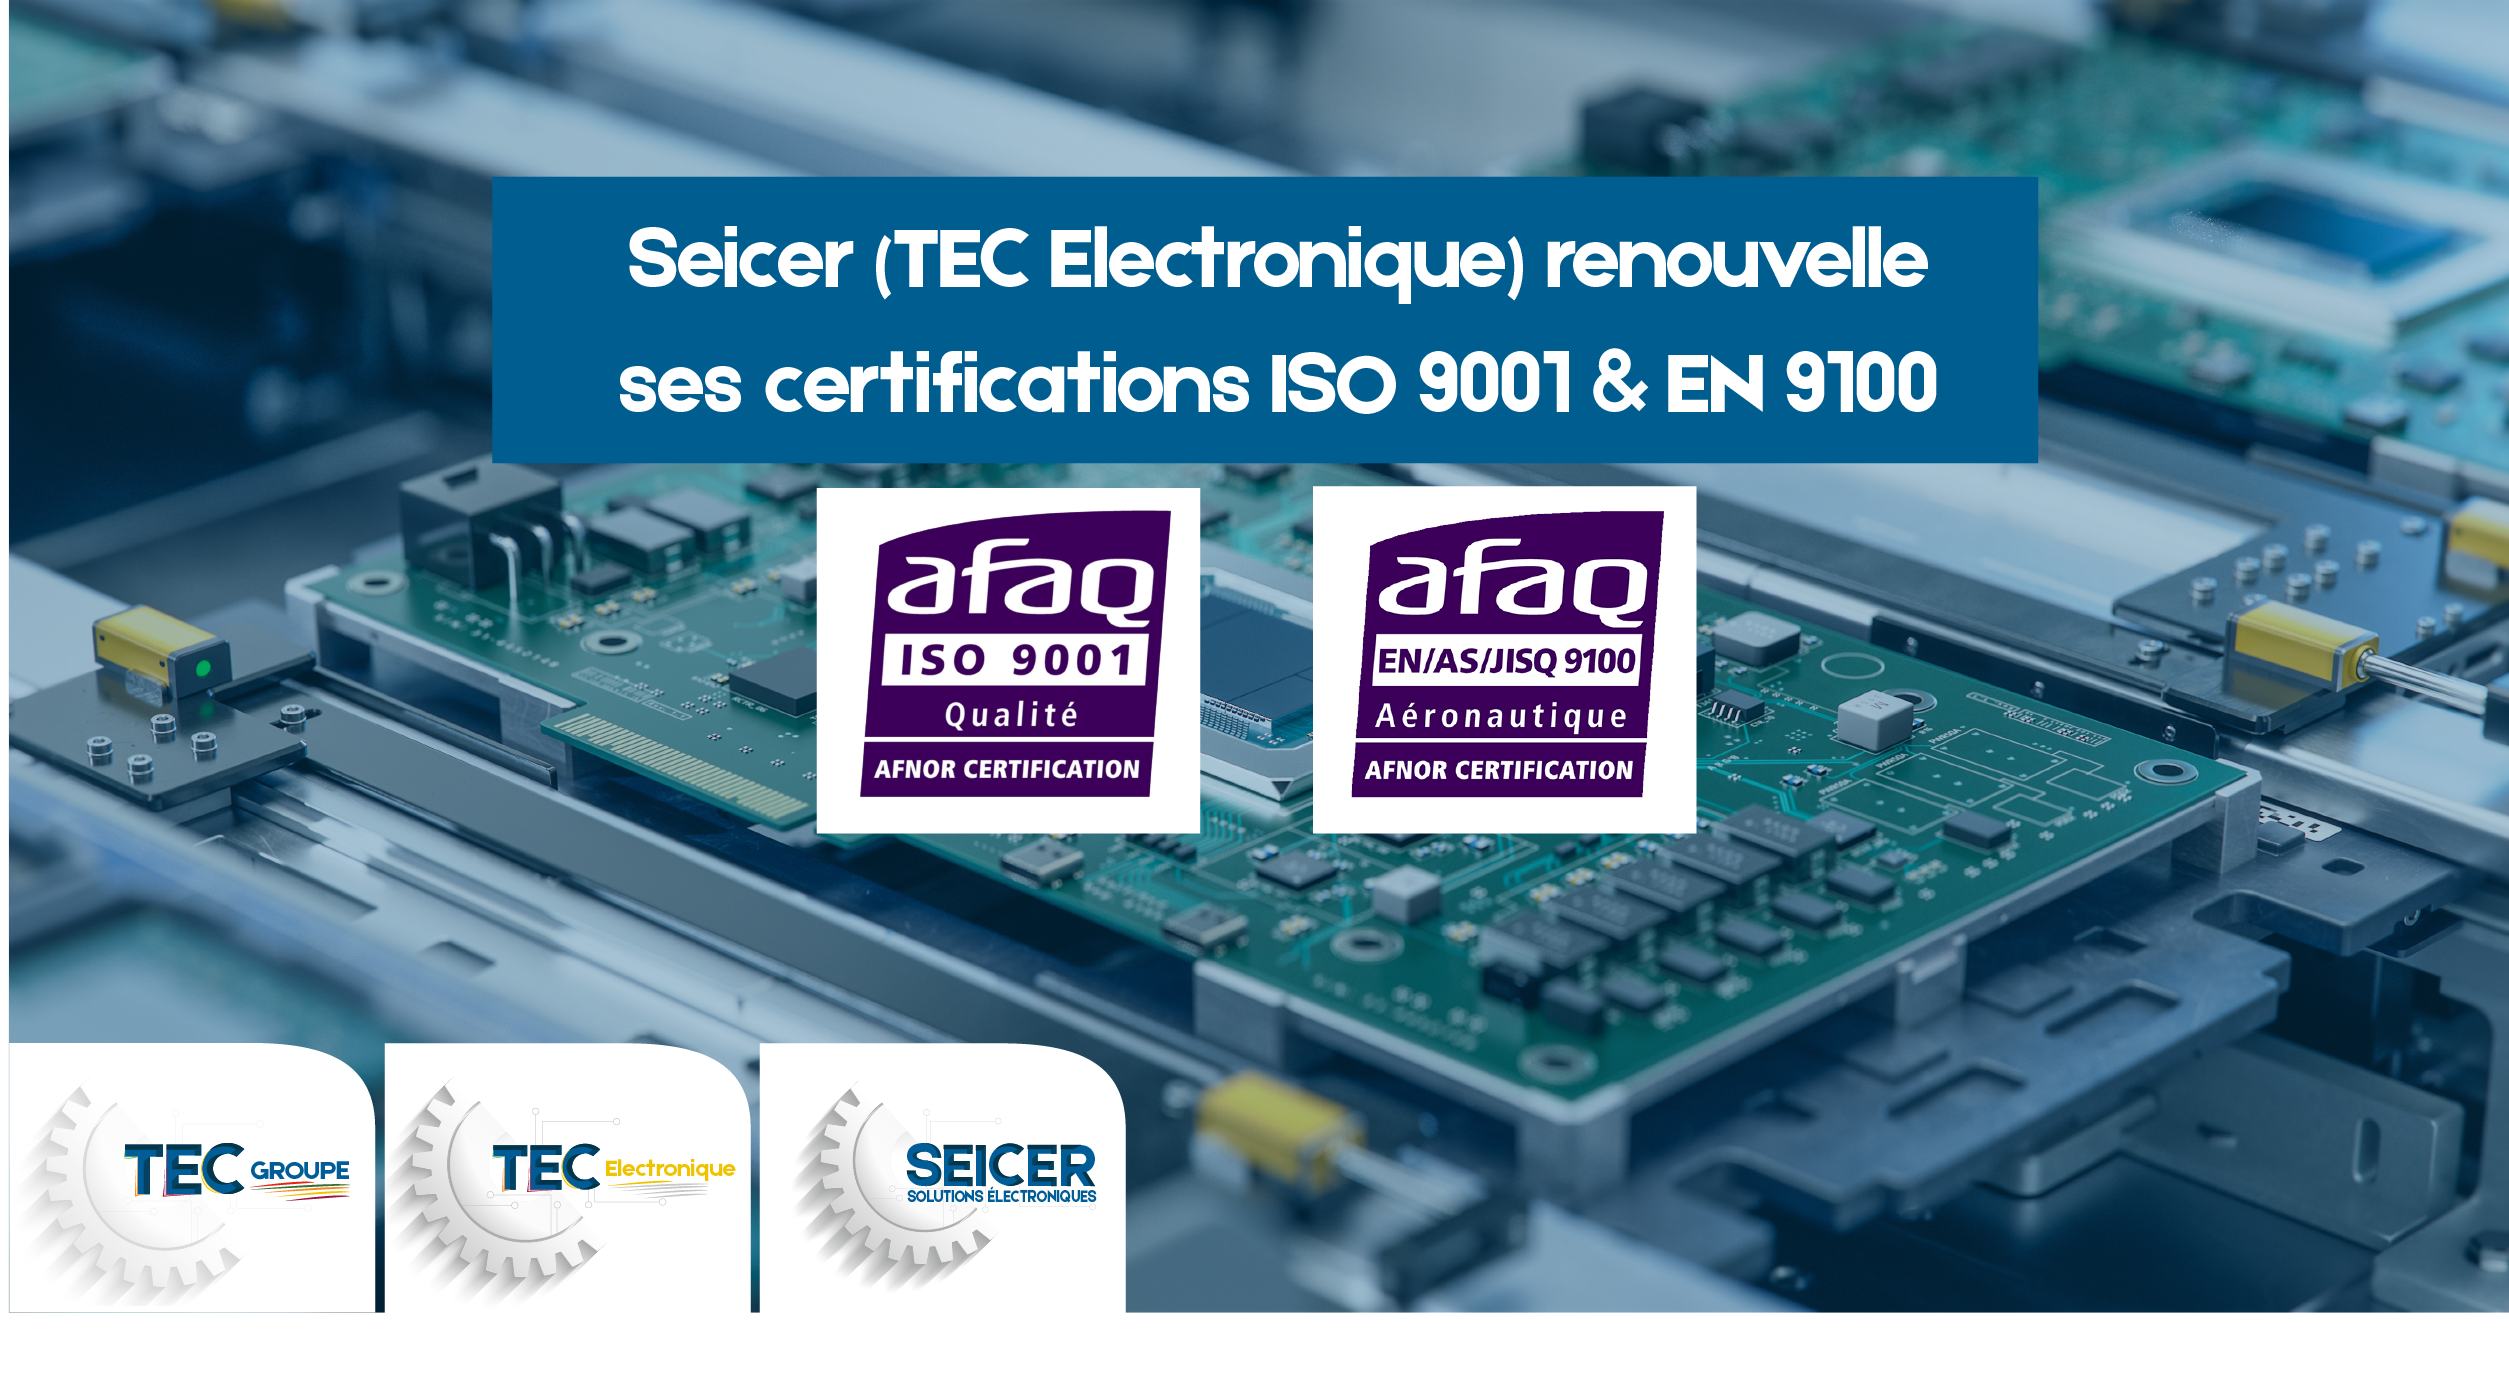 SEICER renouvelle ses deux certifications ISO 9001 et EN 9100